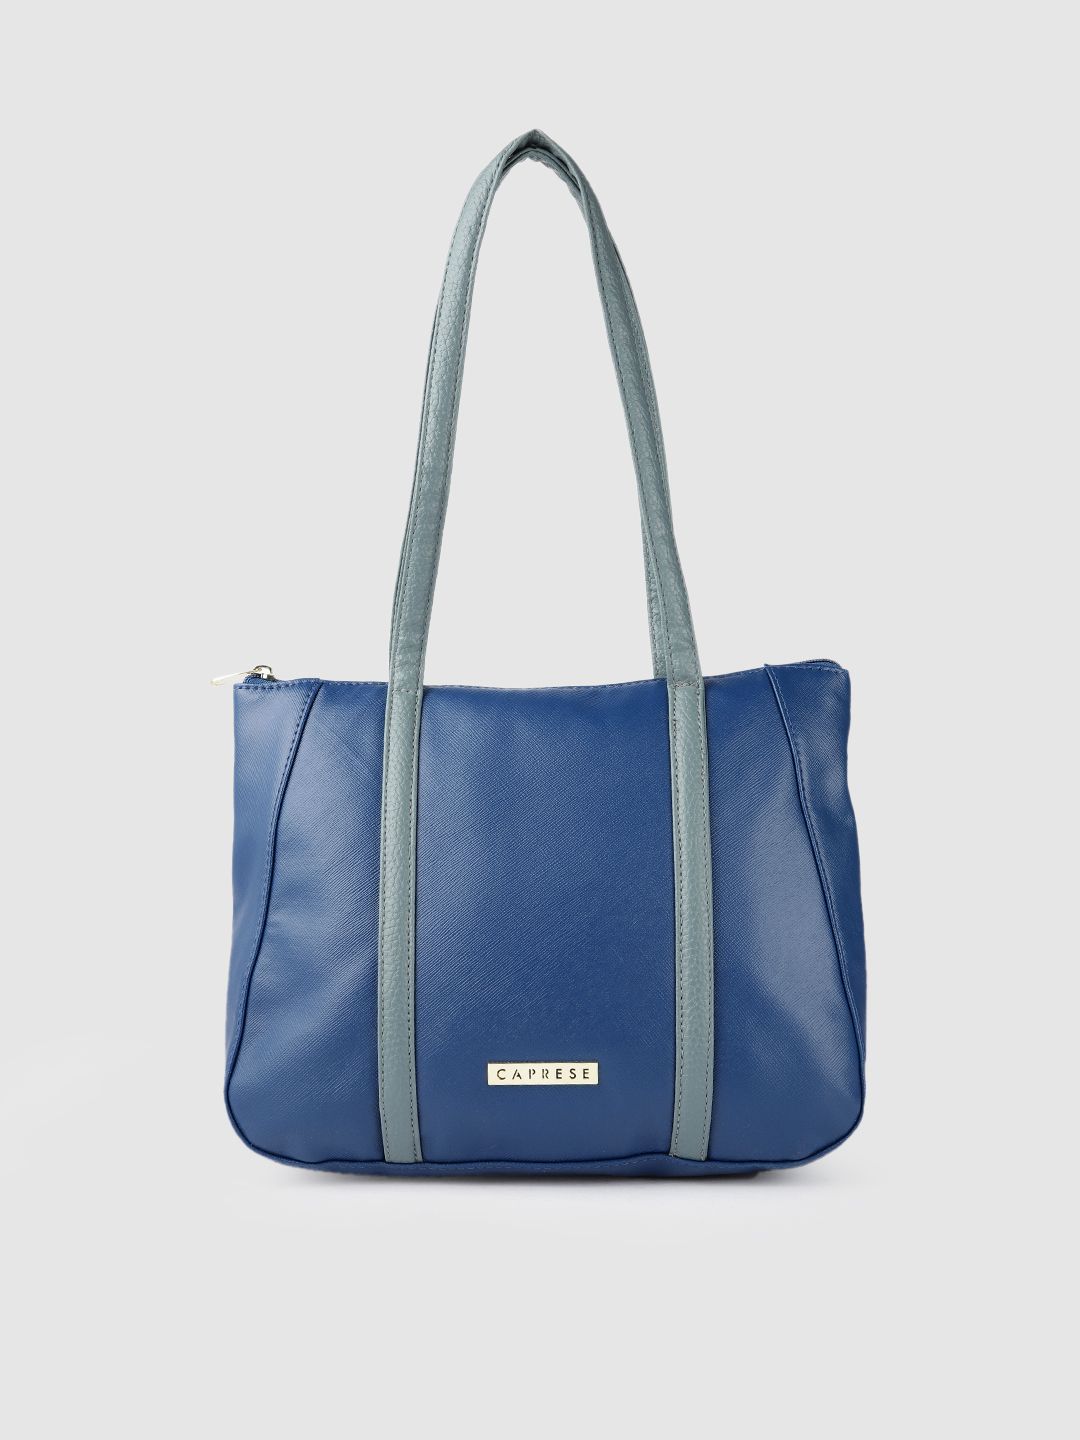 Caprese Blue PU Structured Shoulder Bag Price in India